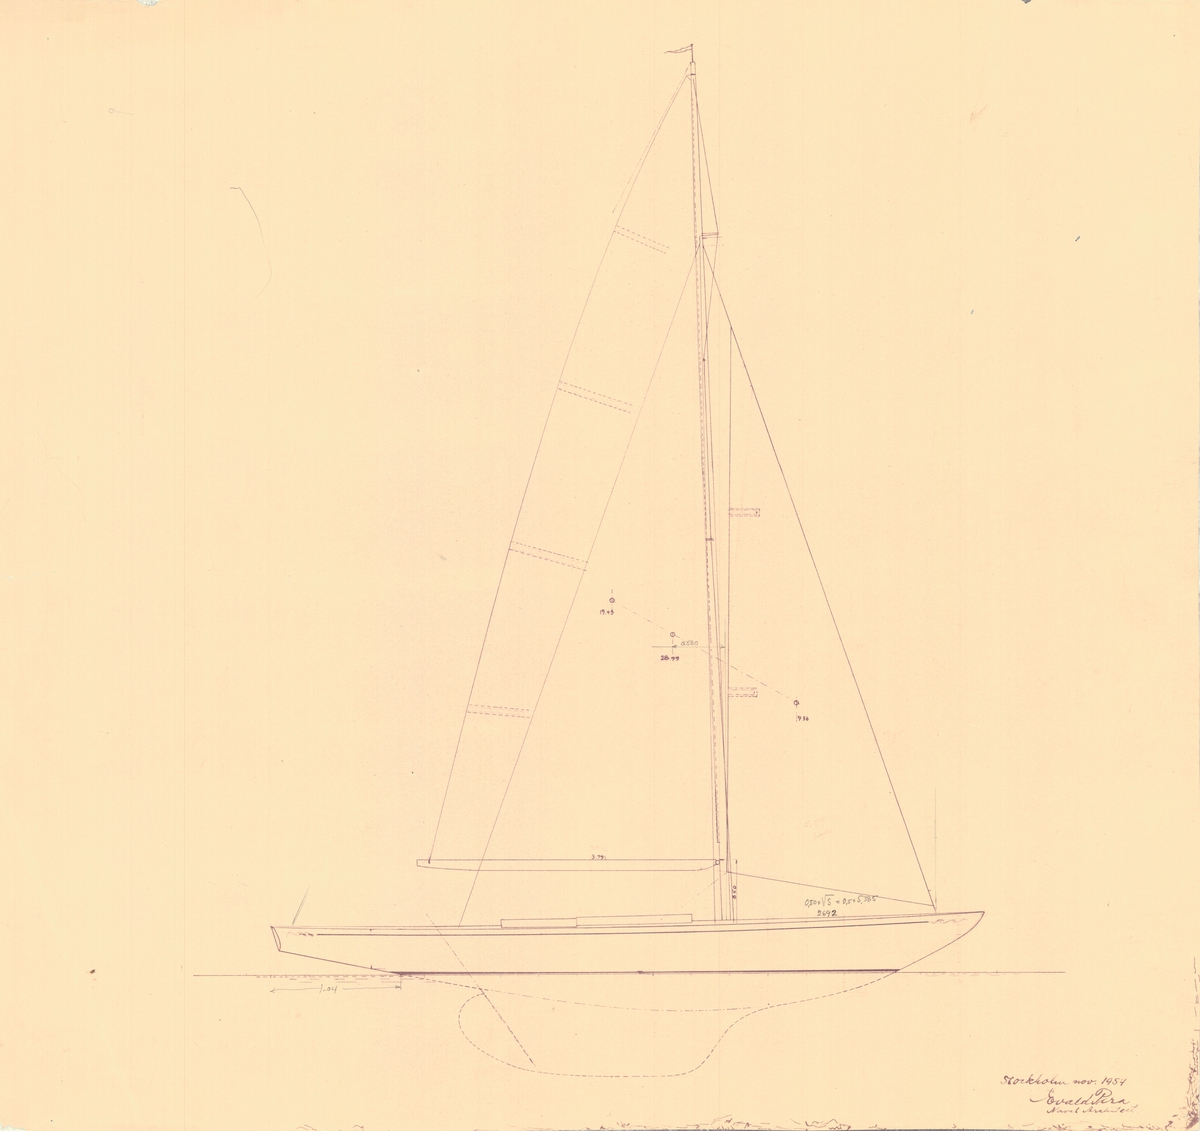 segelbåt av Evald Pira.
Segelritning